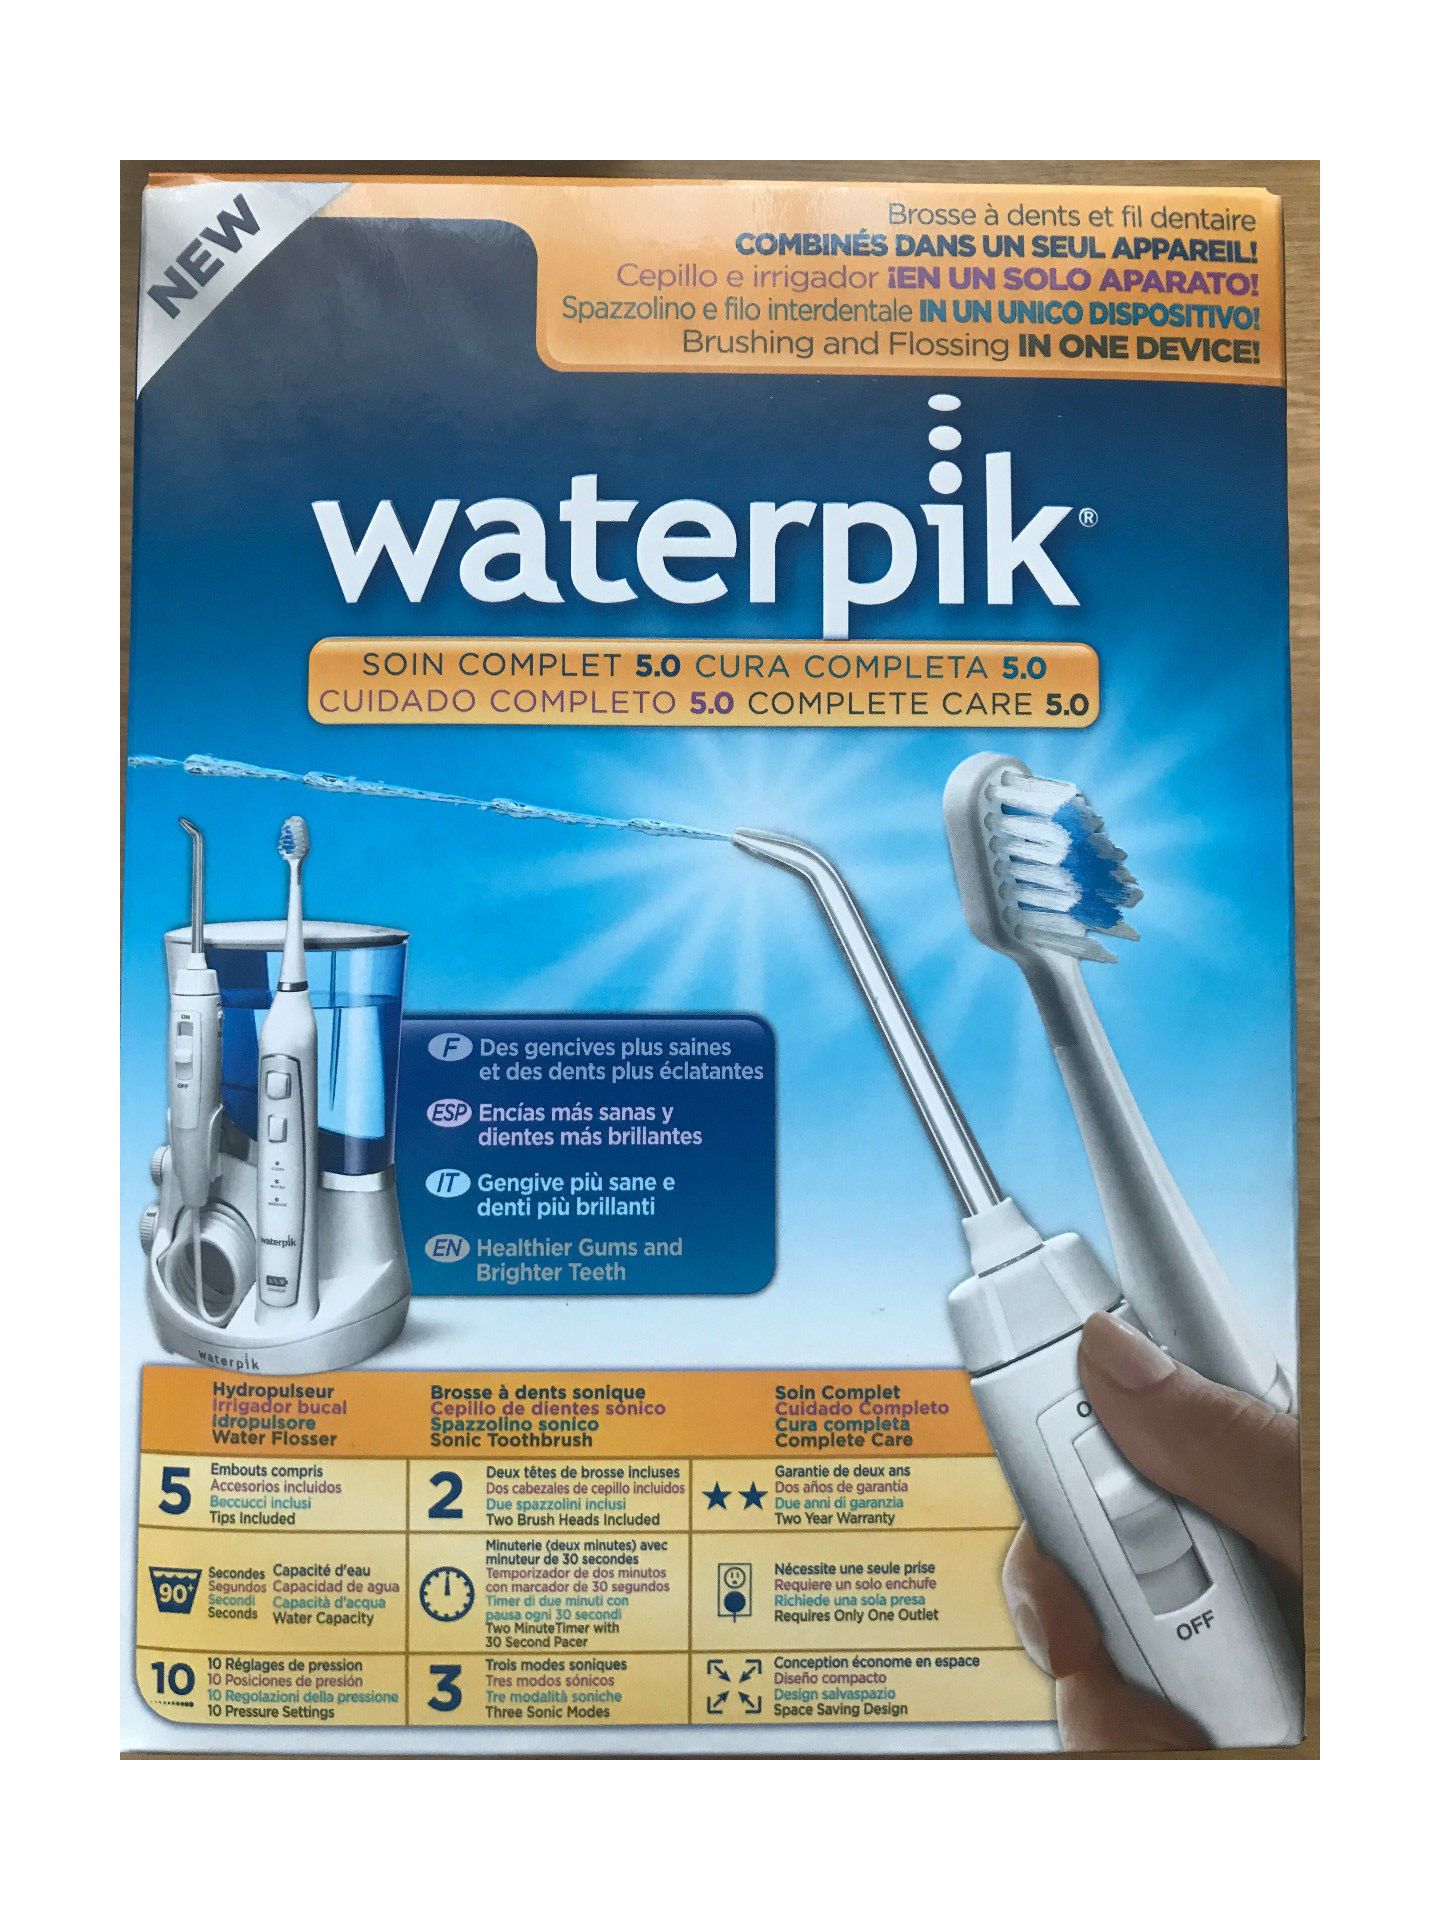 آلة فرشاة الأسنان وخيط الأسنان المائي الكهربائية Waterpik Wp 861e2 عناية متكاملة 5 0 موقع Xcite Kuwait